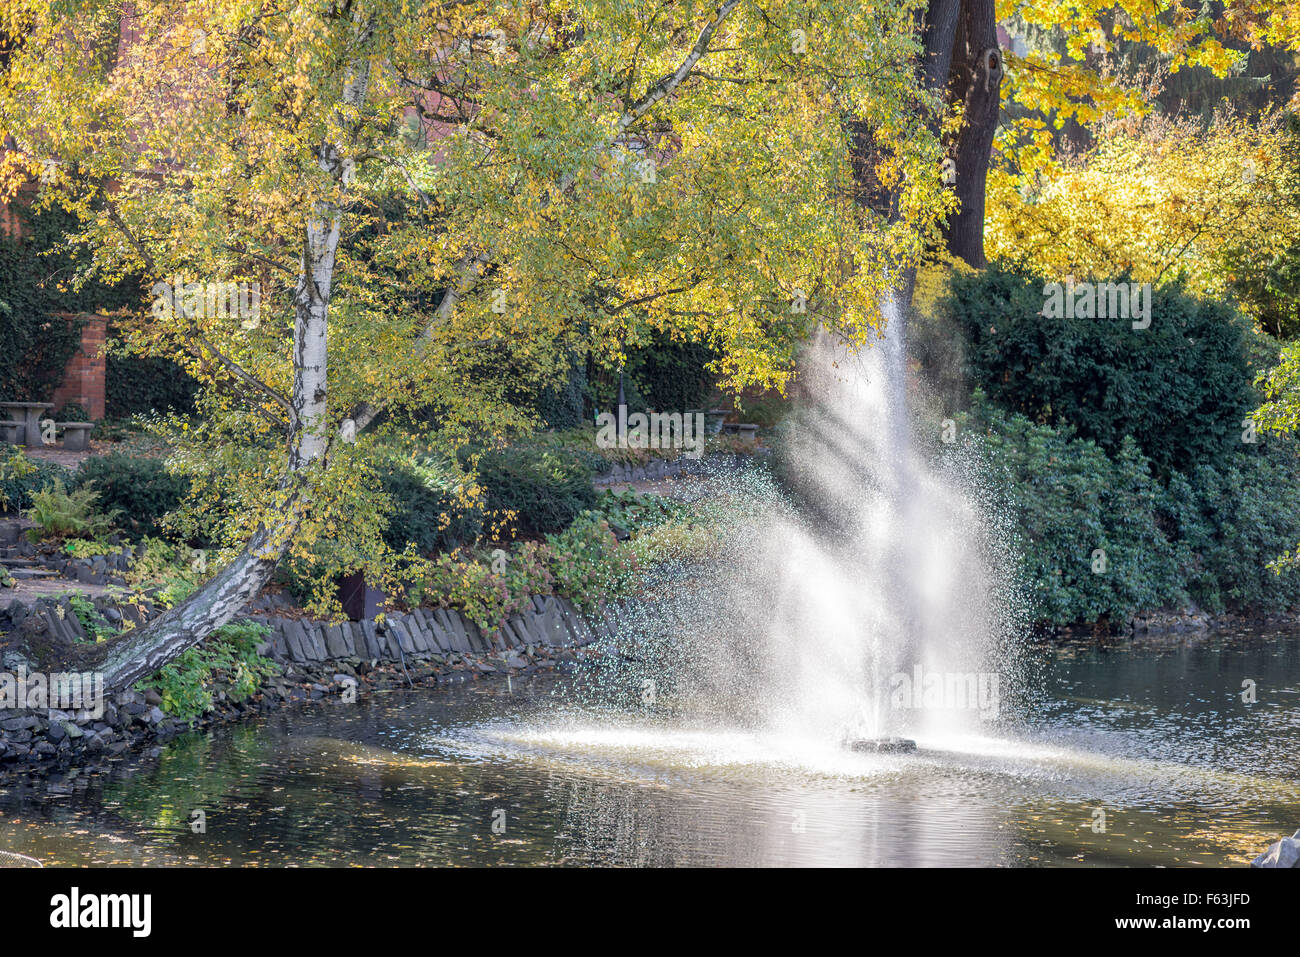 Jardins botaniques de couleurs d'automne Wroclaw Banque D'Images